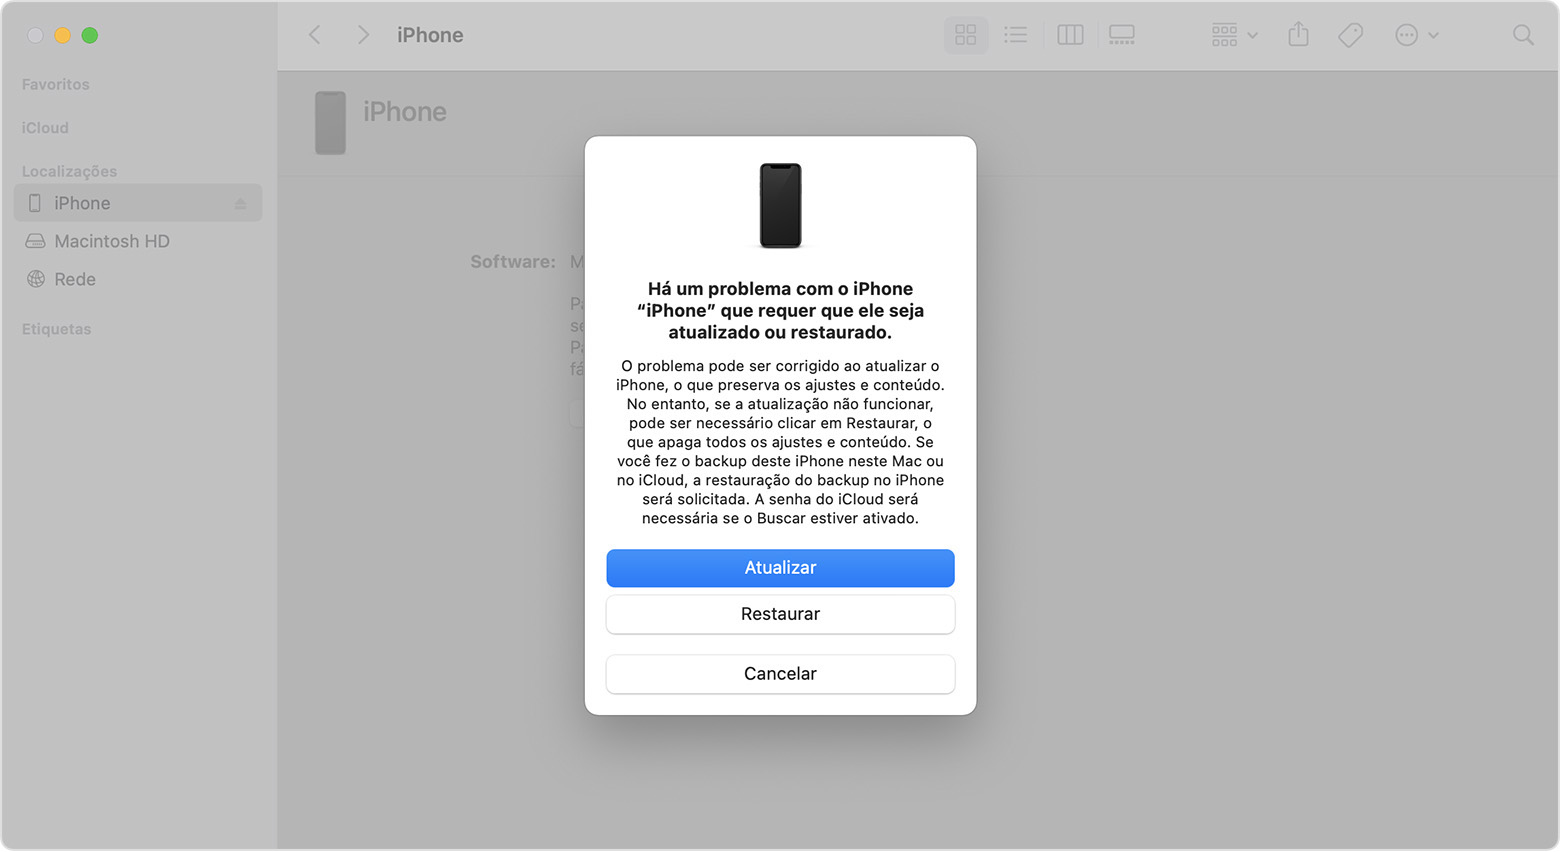 Janela do Finder mostrando uma solicitação com as opções para atualizar ou restaurar o iPhone. A opção Atualizar está selecionada.